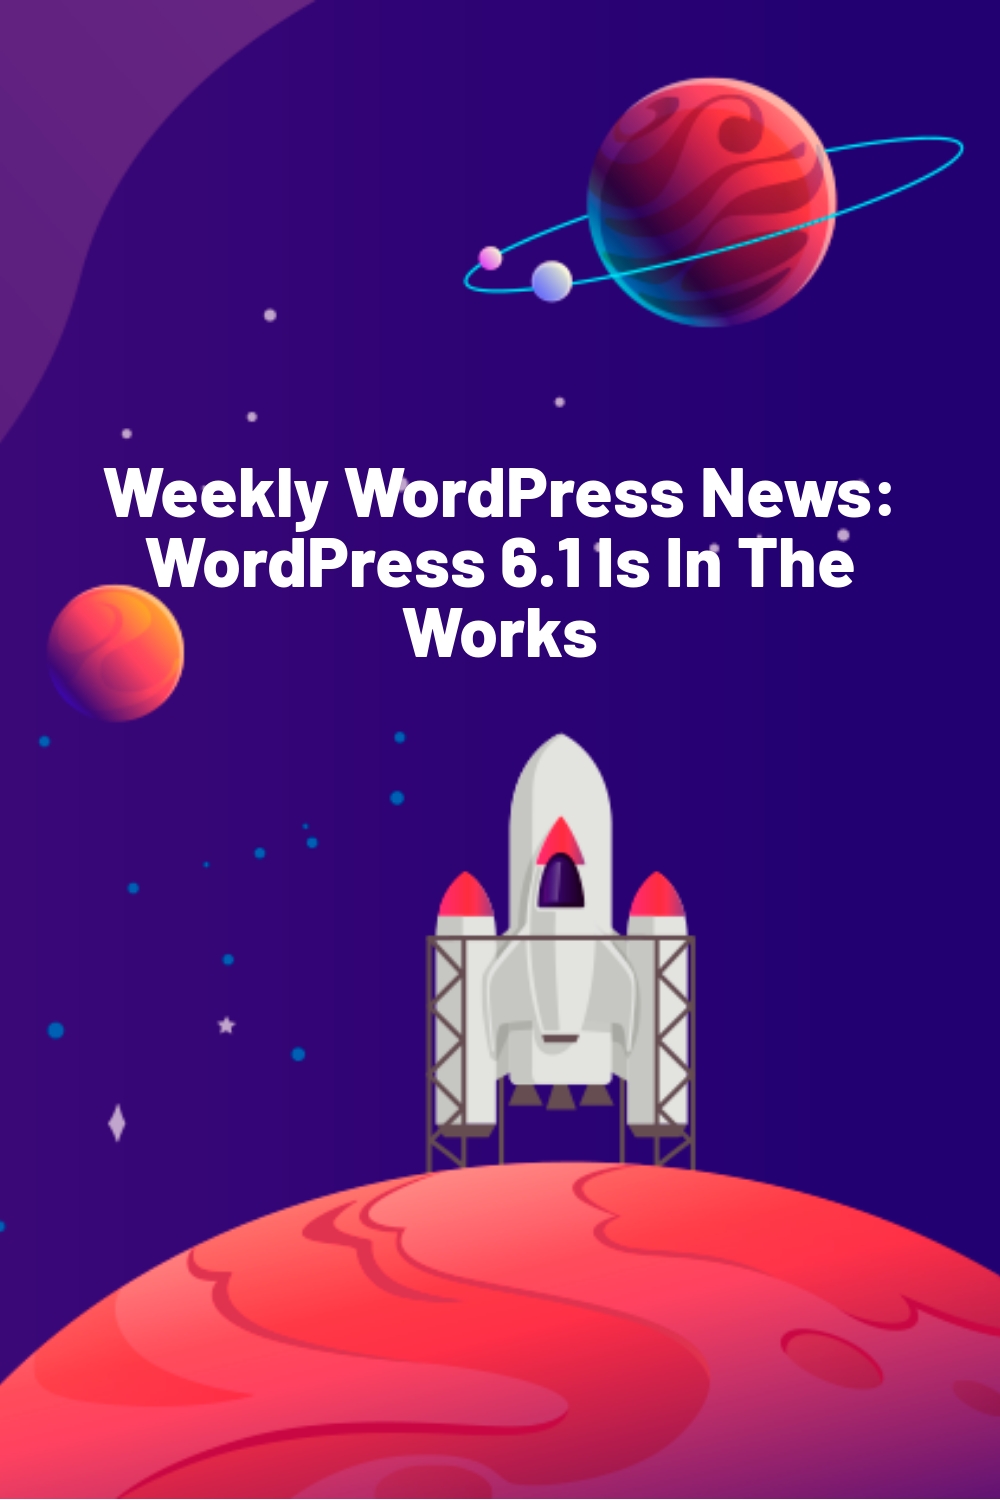 Weekly WordPress News: WordPress 6.1 Is In The Works